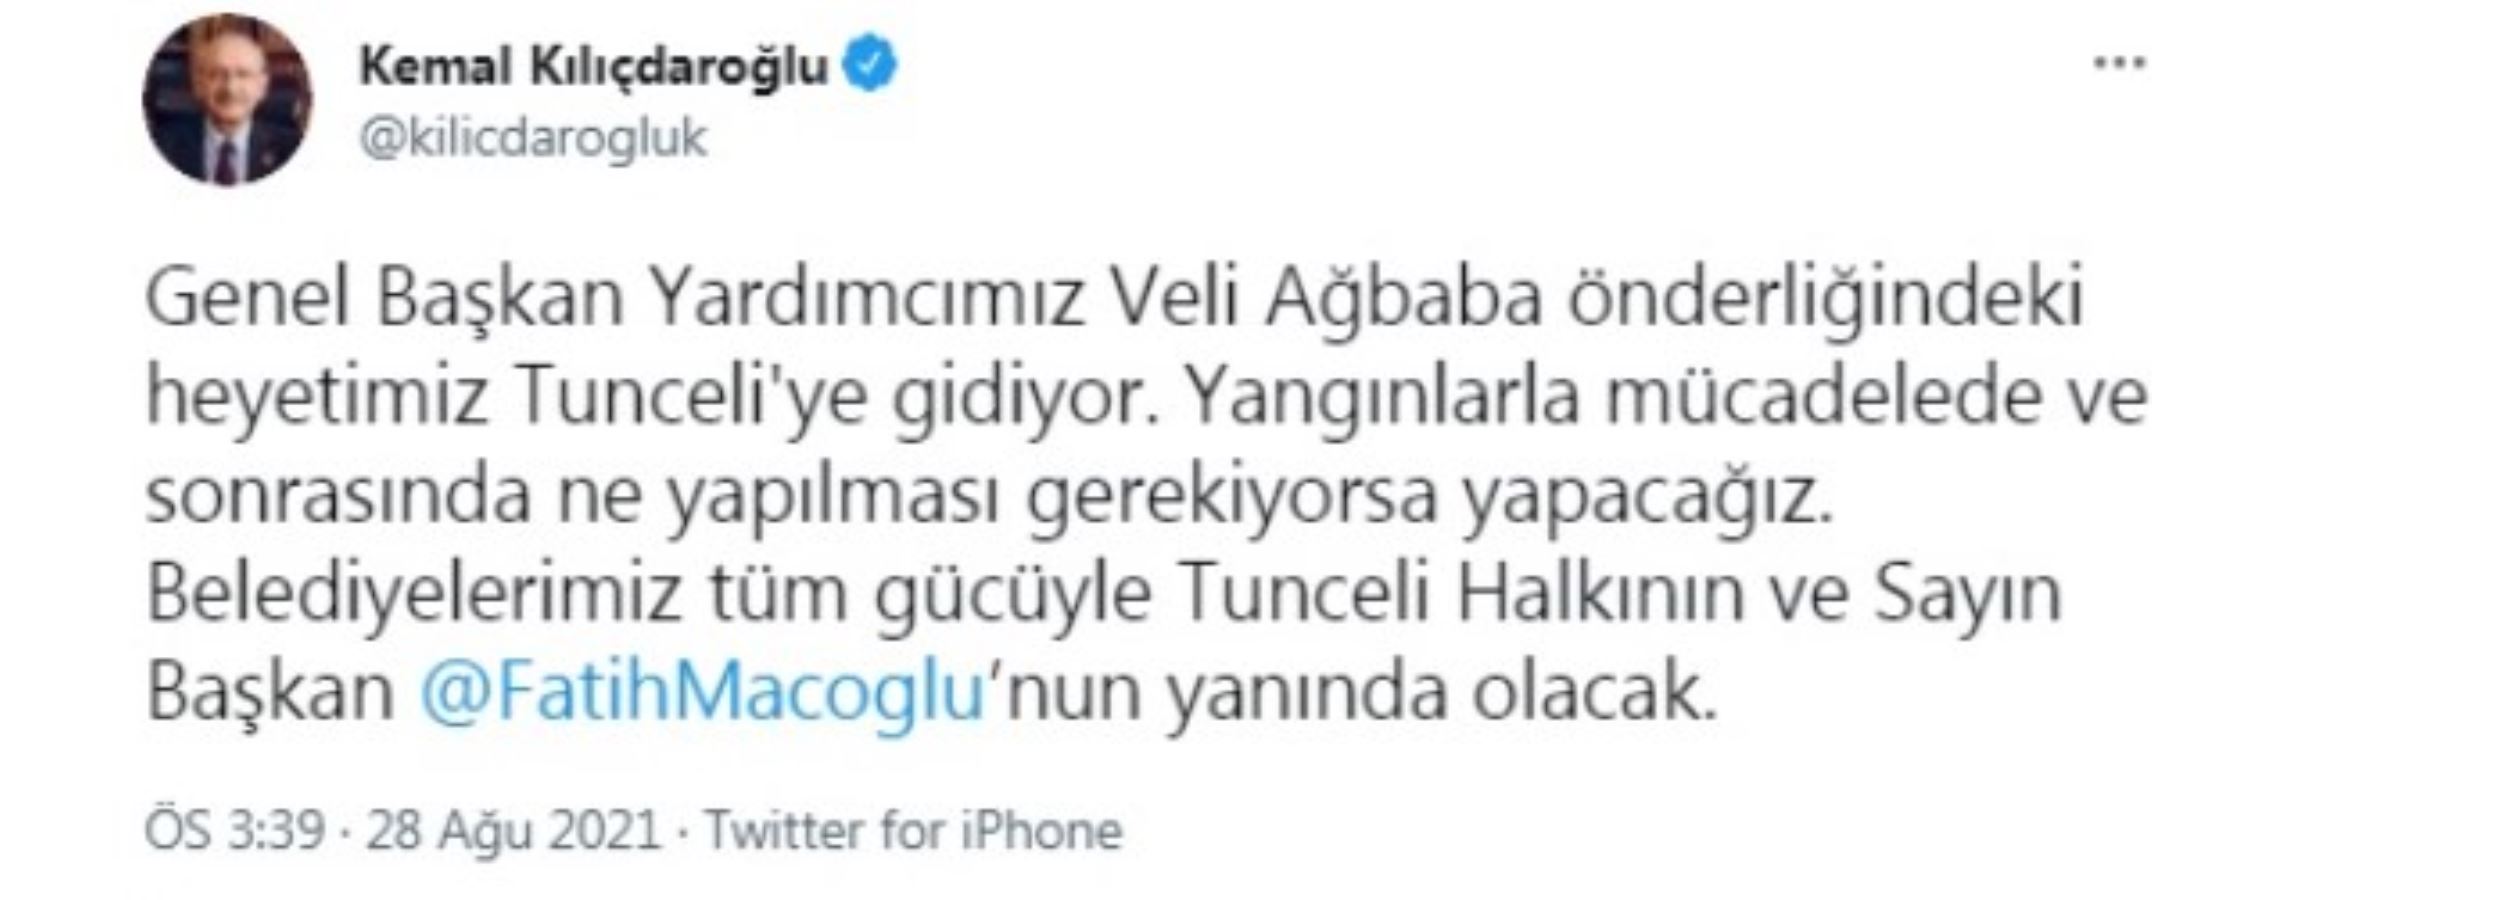 Kılıçdaroğlu'ndan 'Tunceli' açıklaması: Ne yapılması gerekiyorsa yapacağız